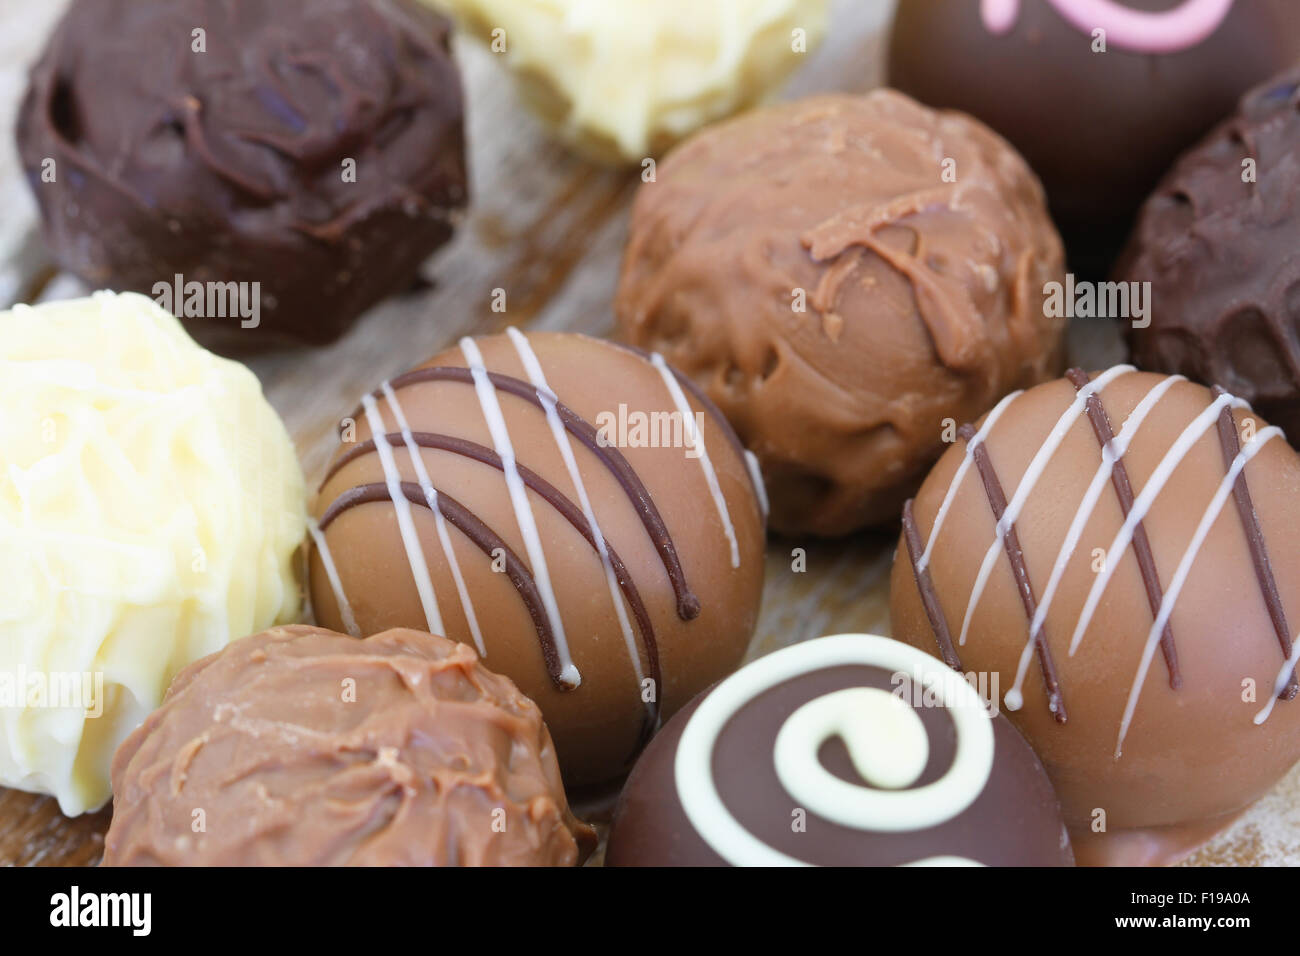 Assorted milk, white and dark chocolates, close up Stock Photo